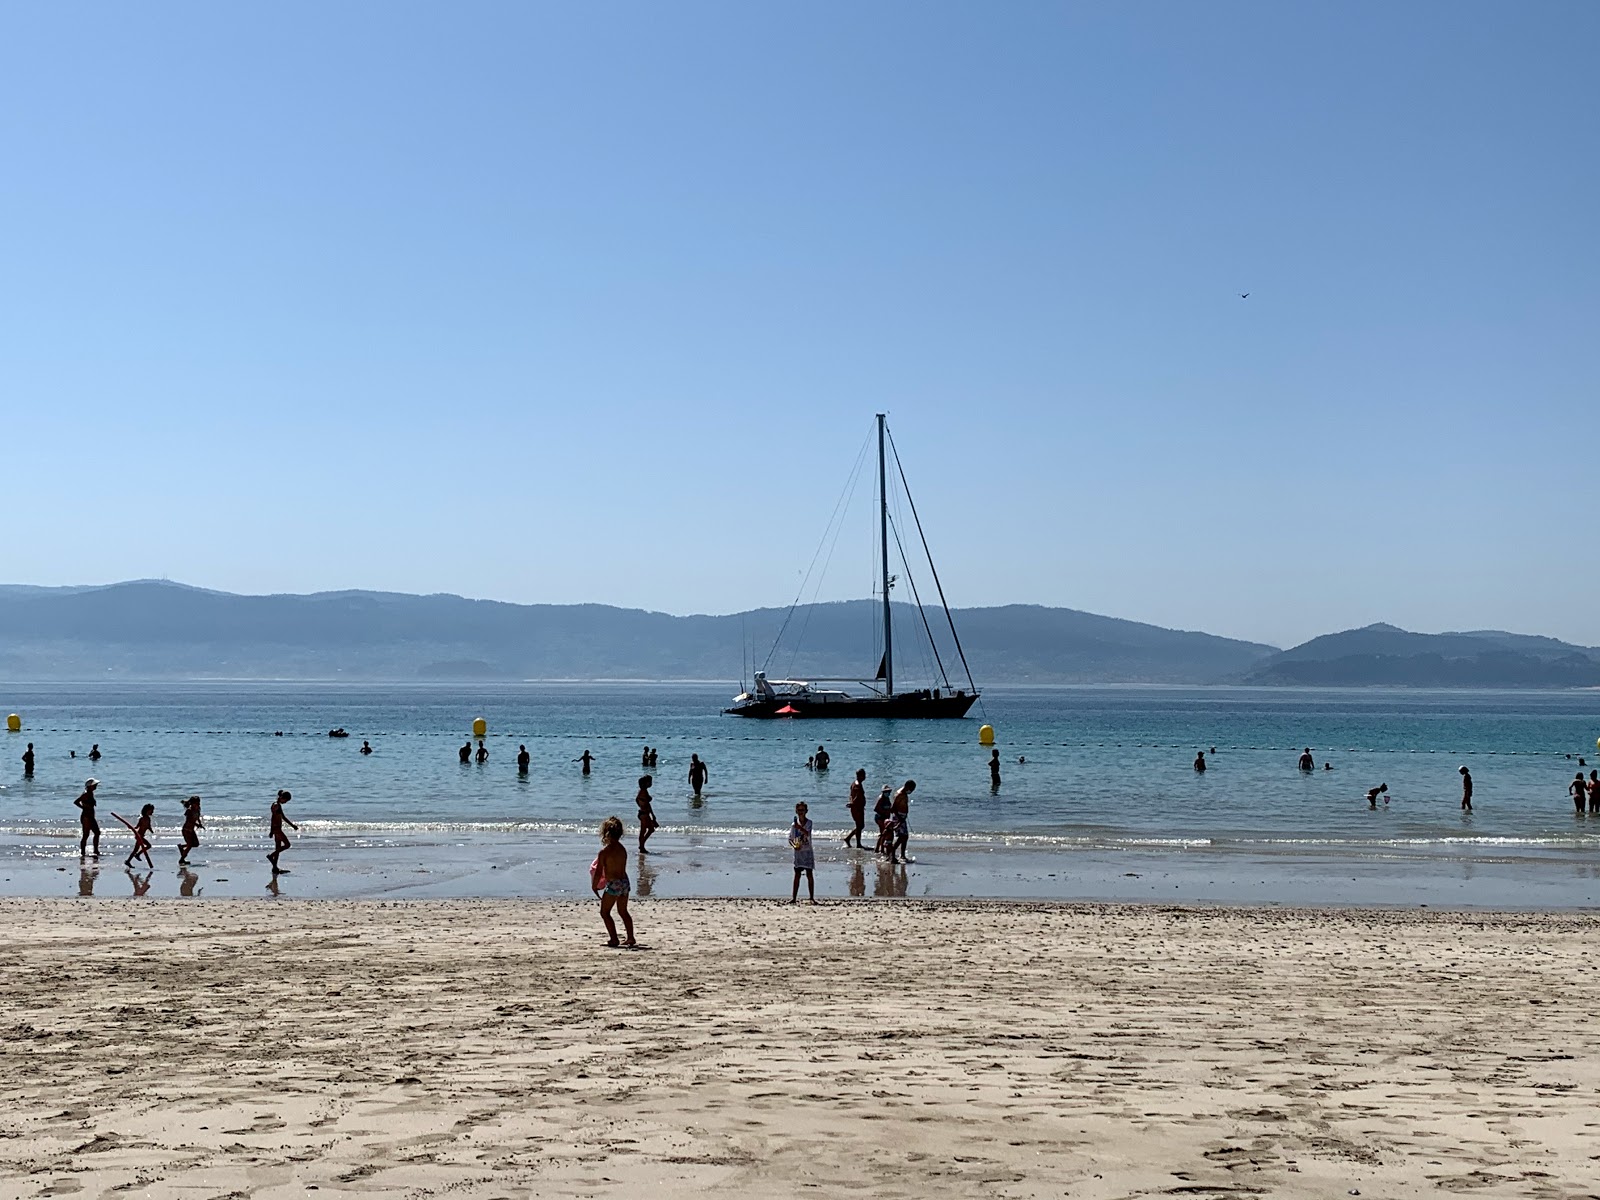 Fotografie cu Canelinas beach înconjurat de munți